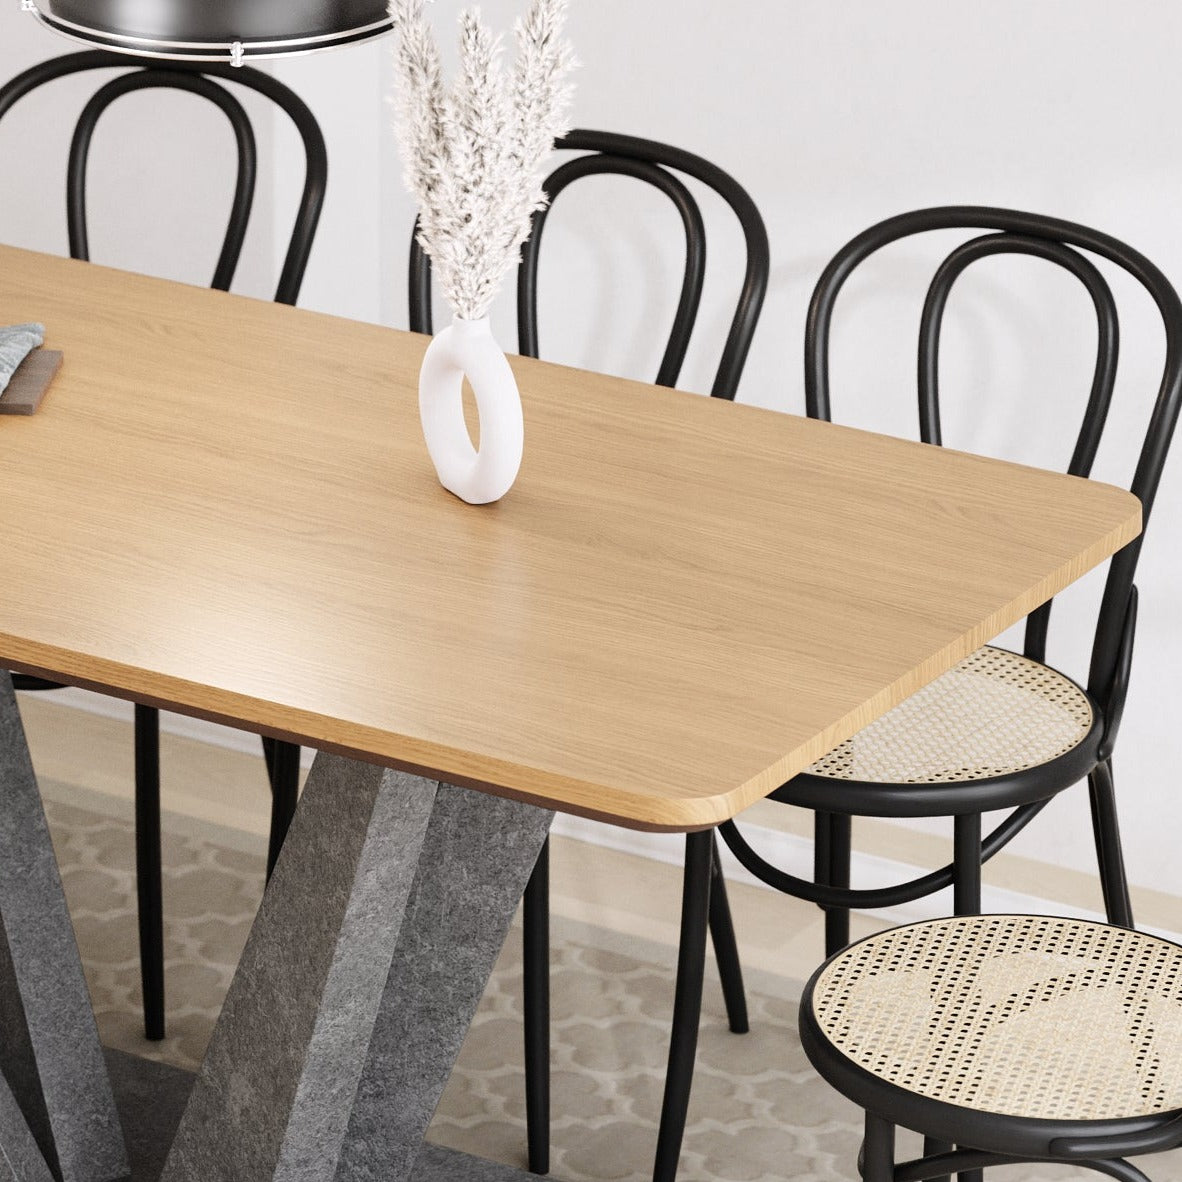 שולחן פינת אוכל מודרנית בגוון אלון ורגליים בצבע בטון ב-2 גדלים לבחירה